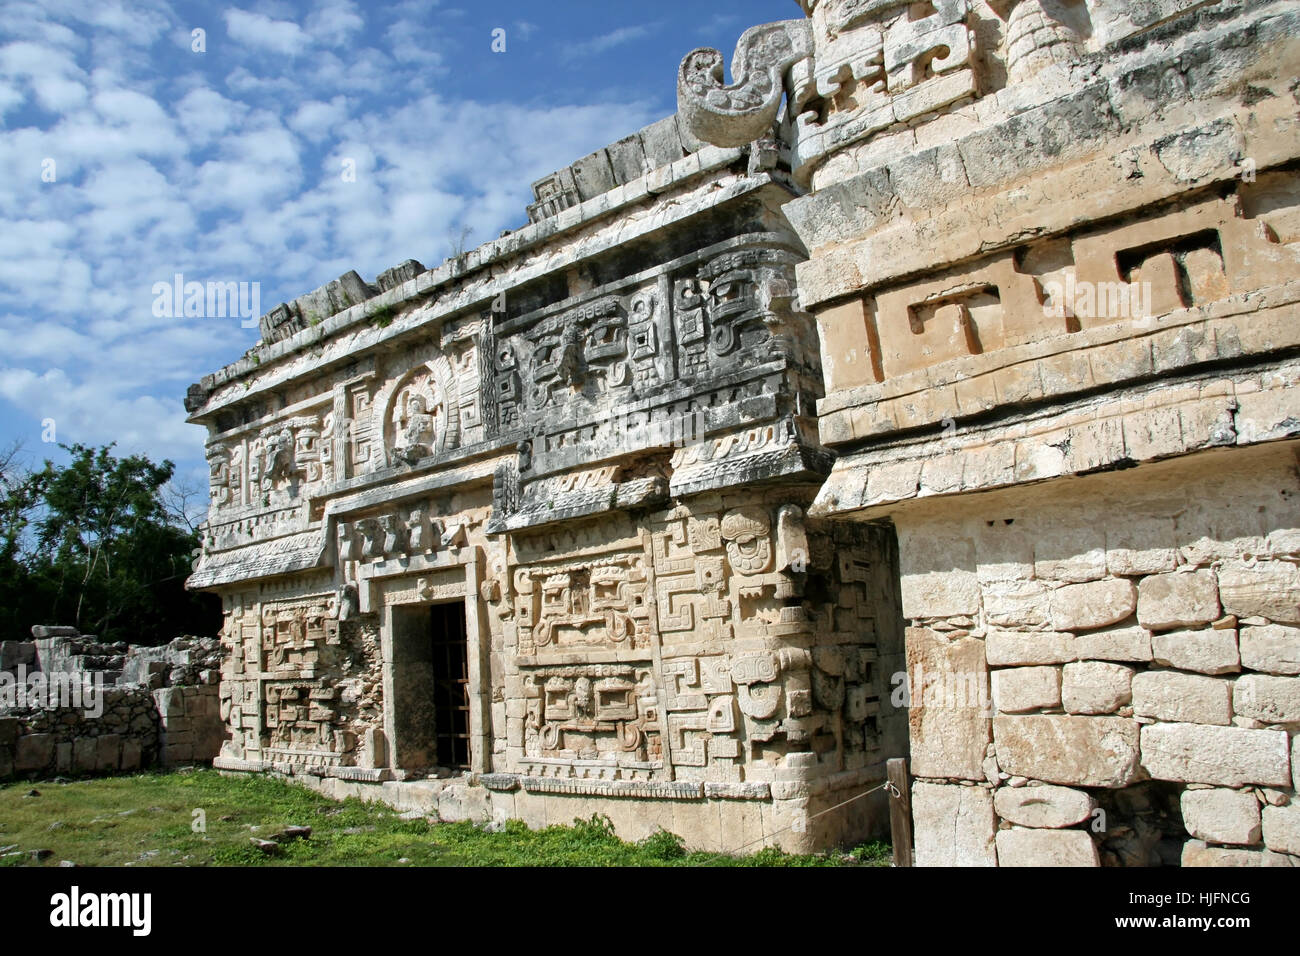 Ruine, patrimoine culturel, archéologie, Mexique, maya, Chichen Itza monjas Banque D'Images